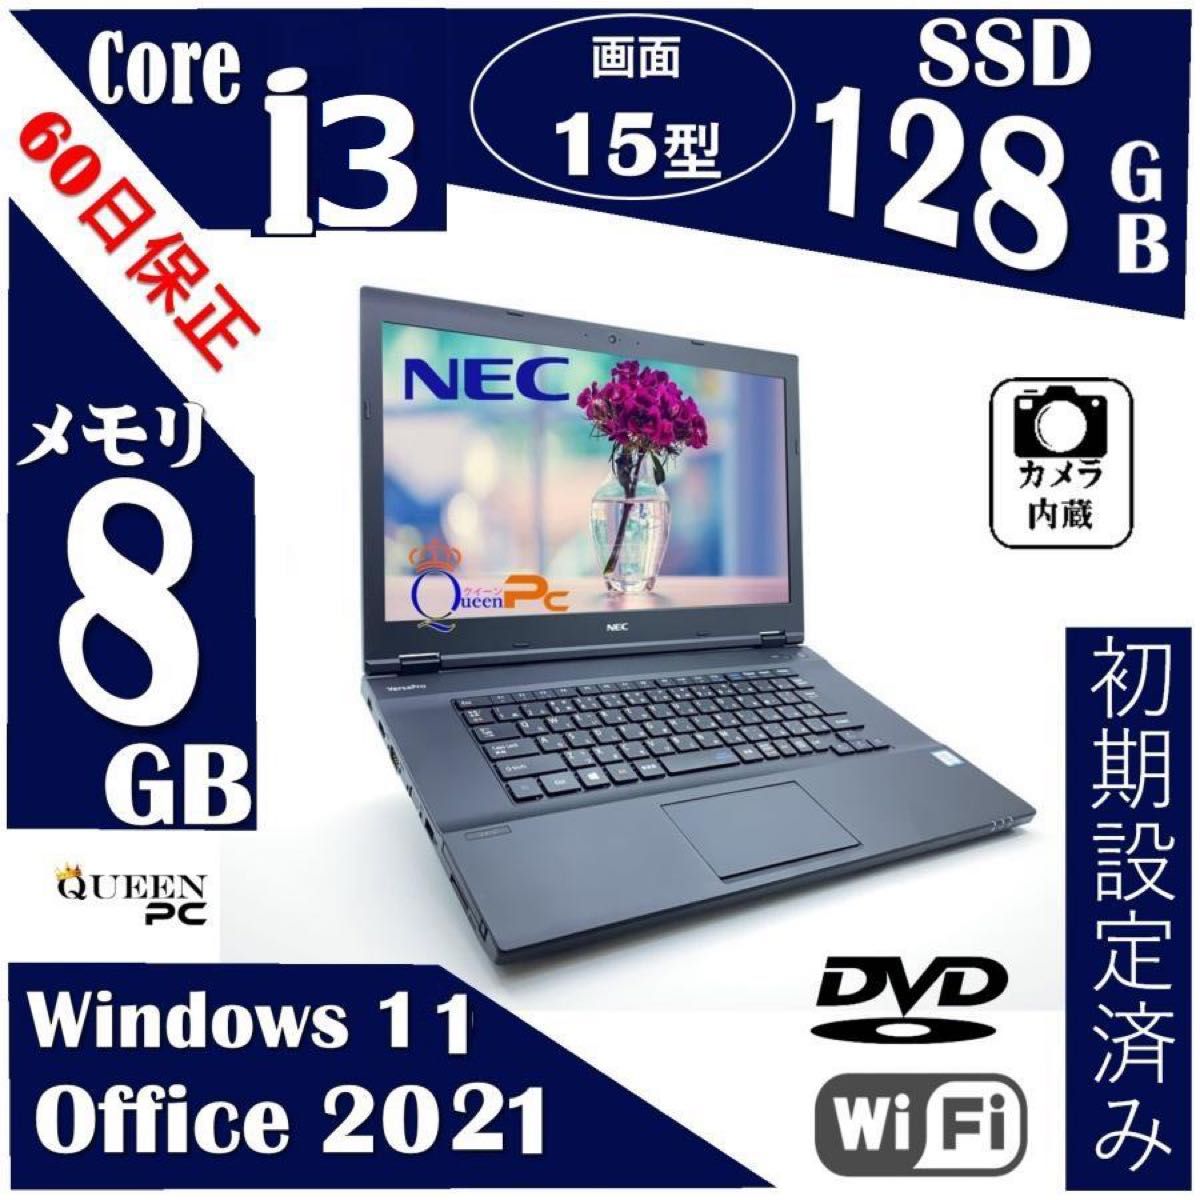 新品 16gbメモリ Win11 パソコン【VX-3】MSオフィス2021付き Core i3